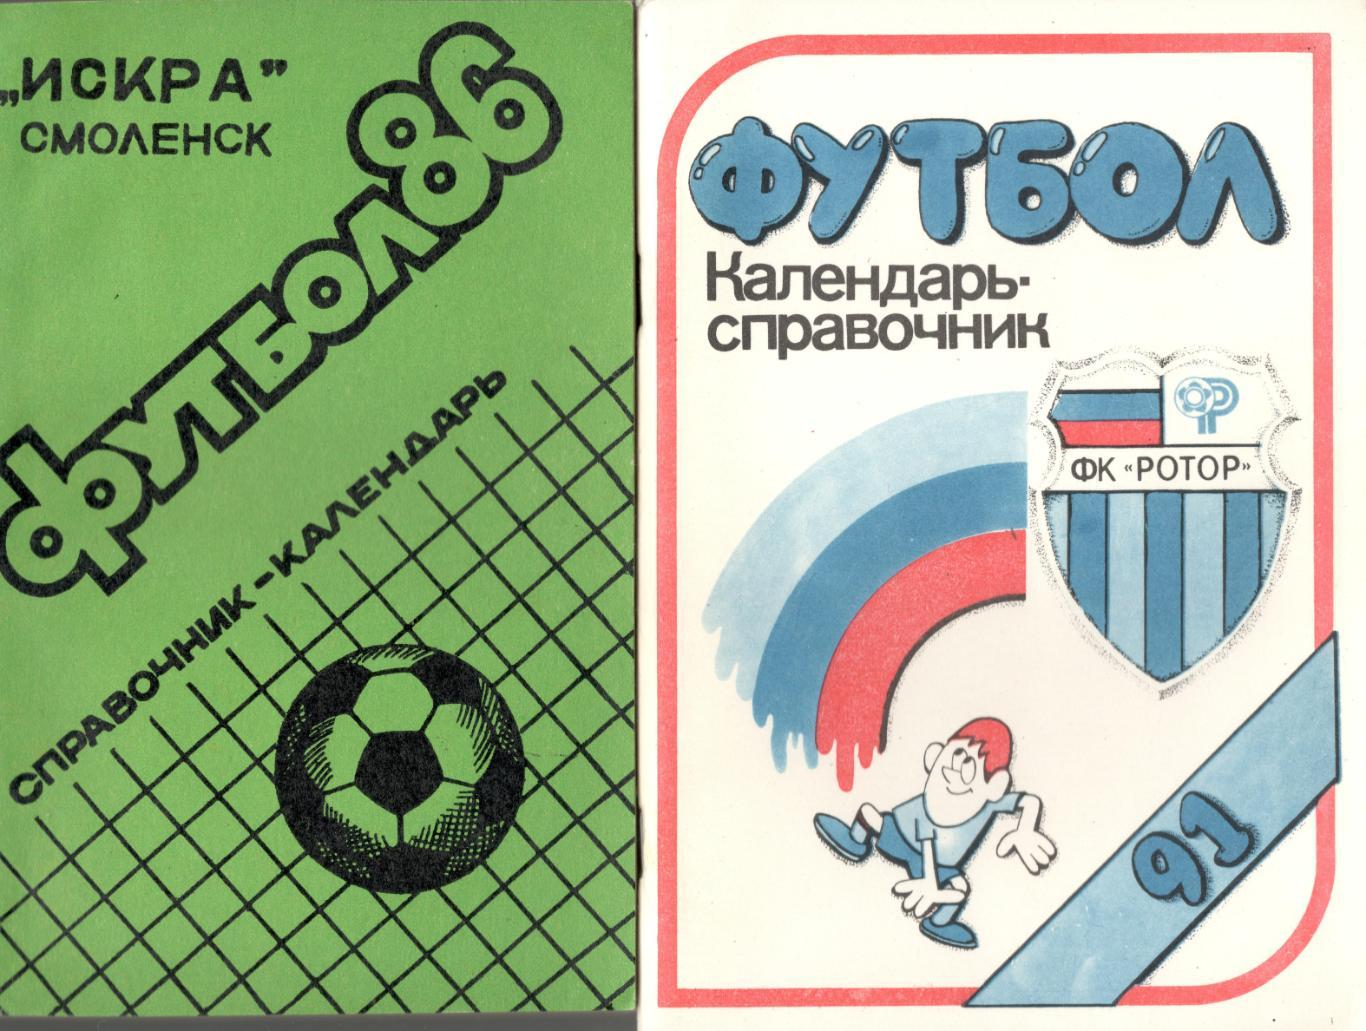 Футбол. Смоленск. 1986